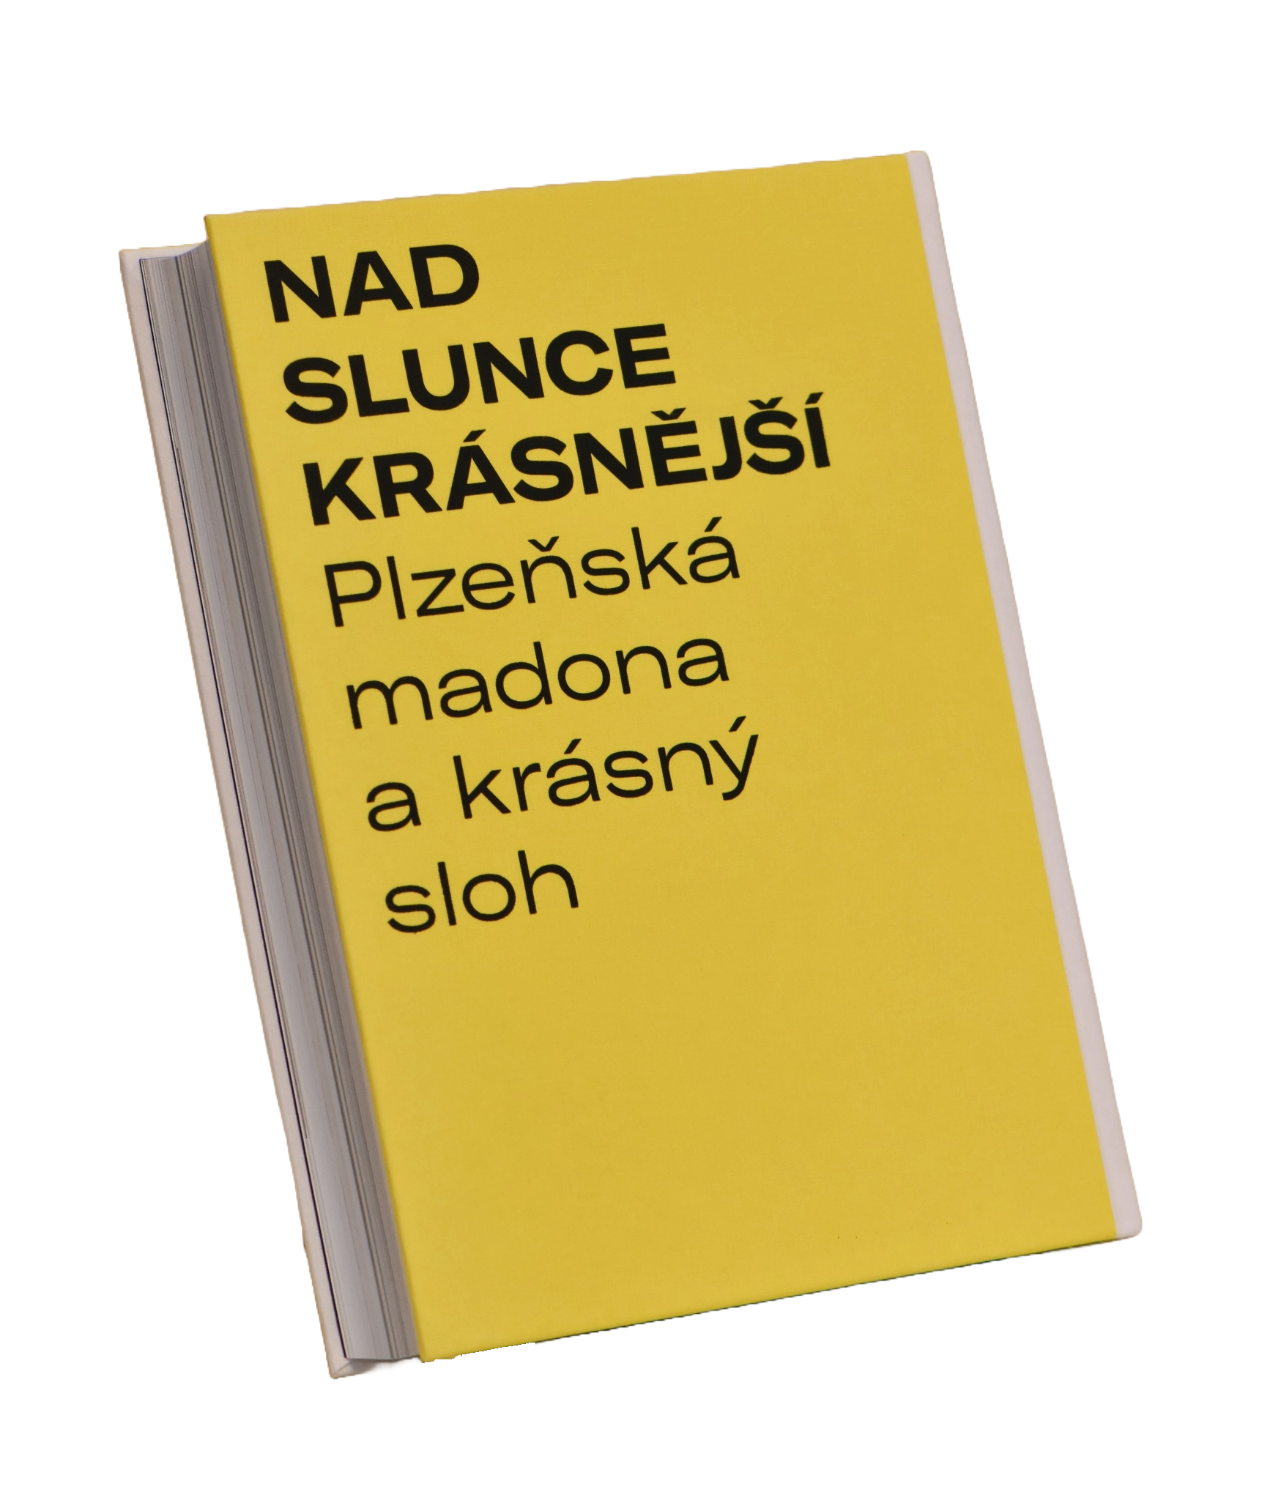 Nad slunce krásnější. Plzeňská madona a krásný sloh – odborná publikace